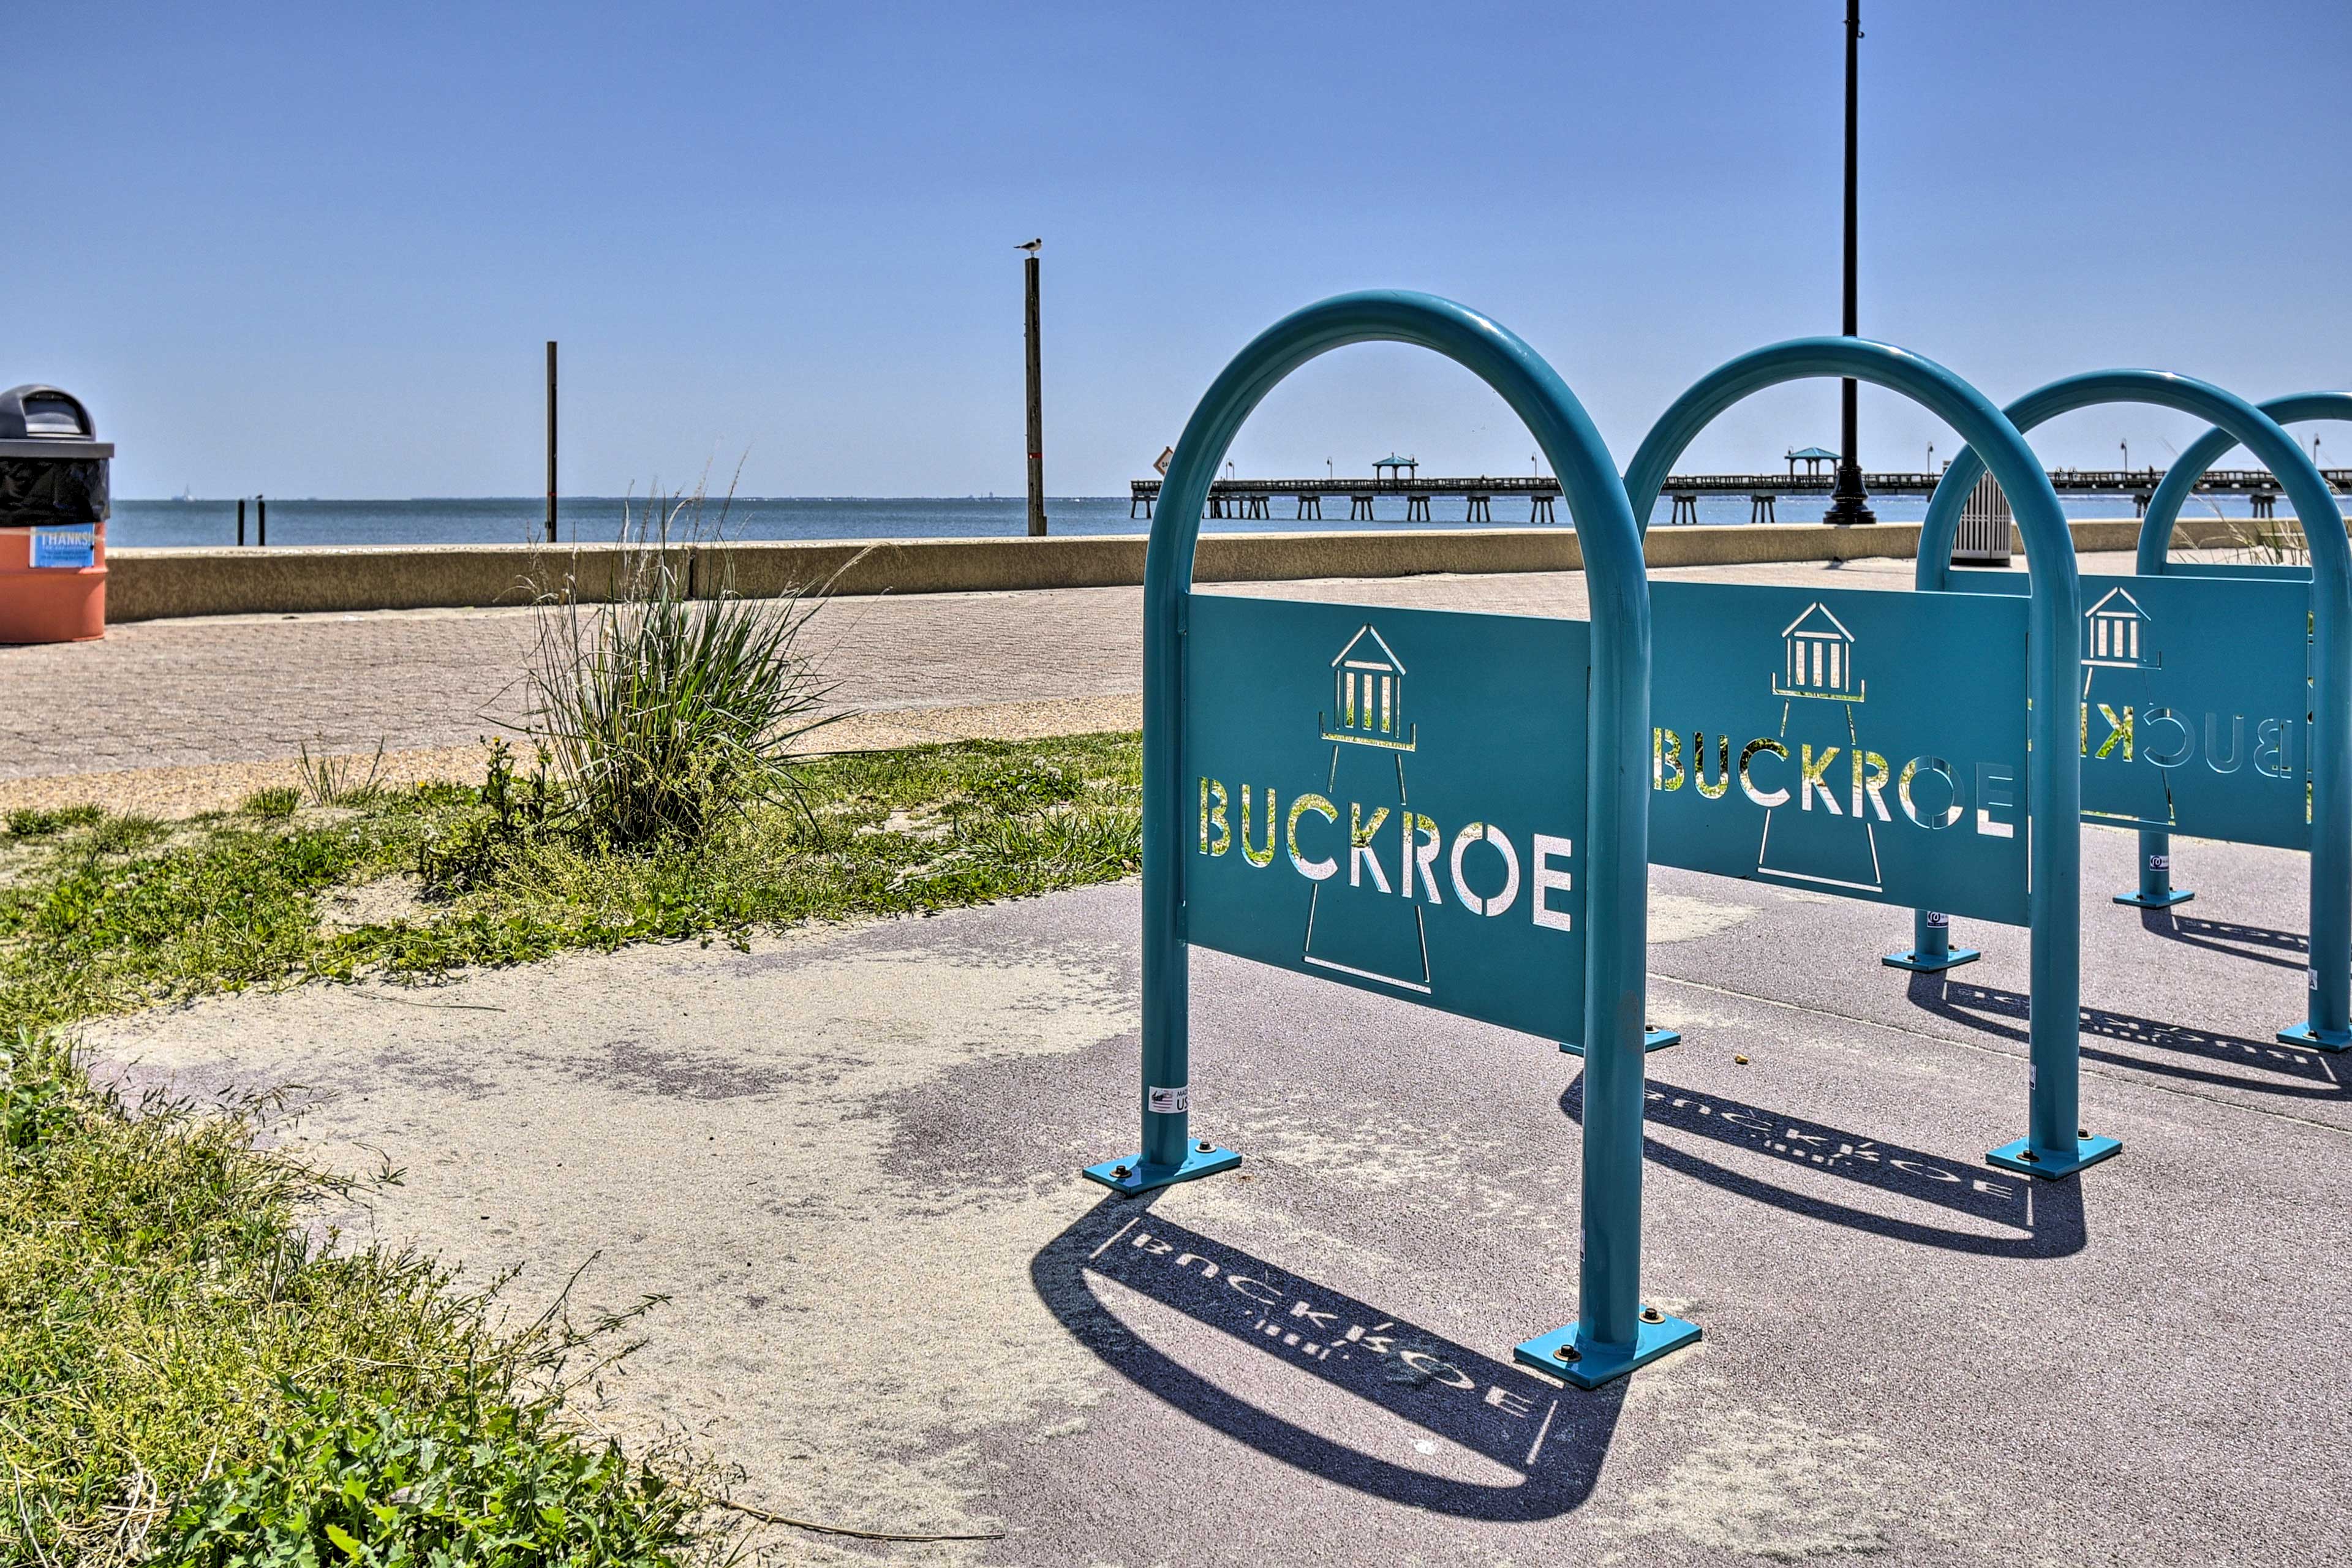 Buckroe Beach (2.0 miles)